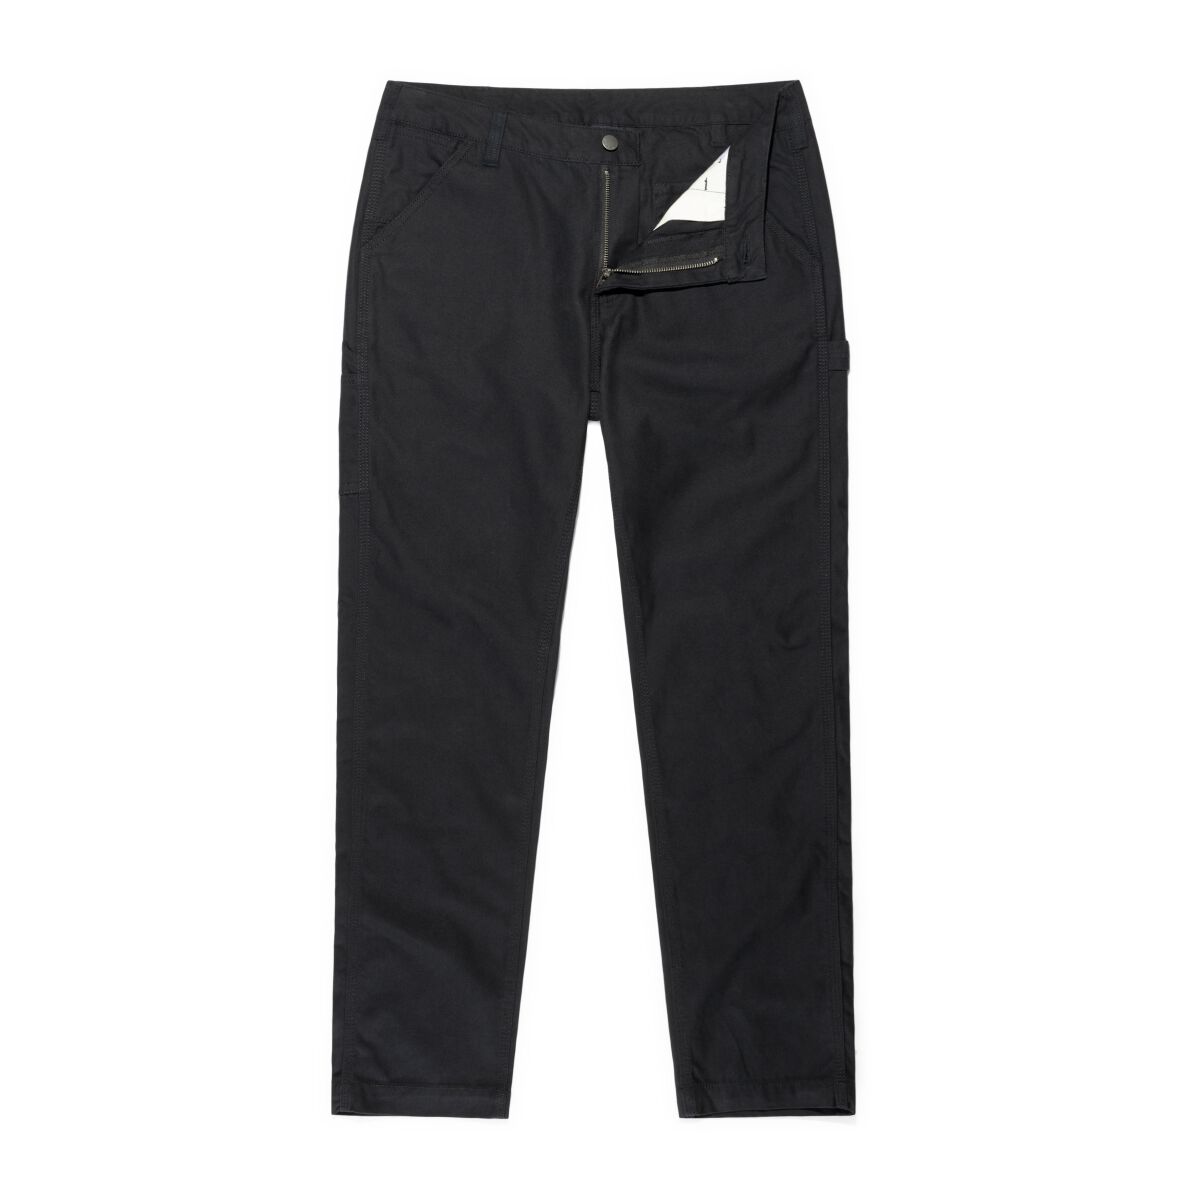 Vintage Industries Stoffhose - Cooper Pants - W32L32 bis W38L32 - für Männer - Größe W36L32 - schwarz